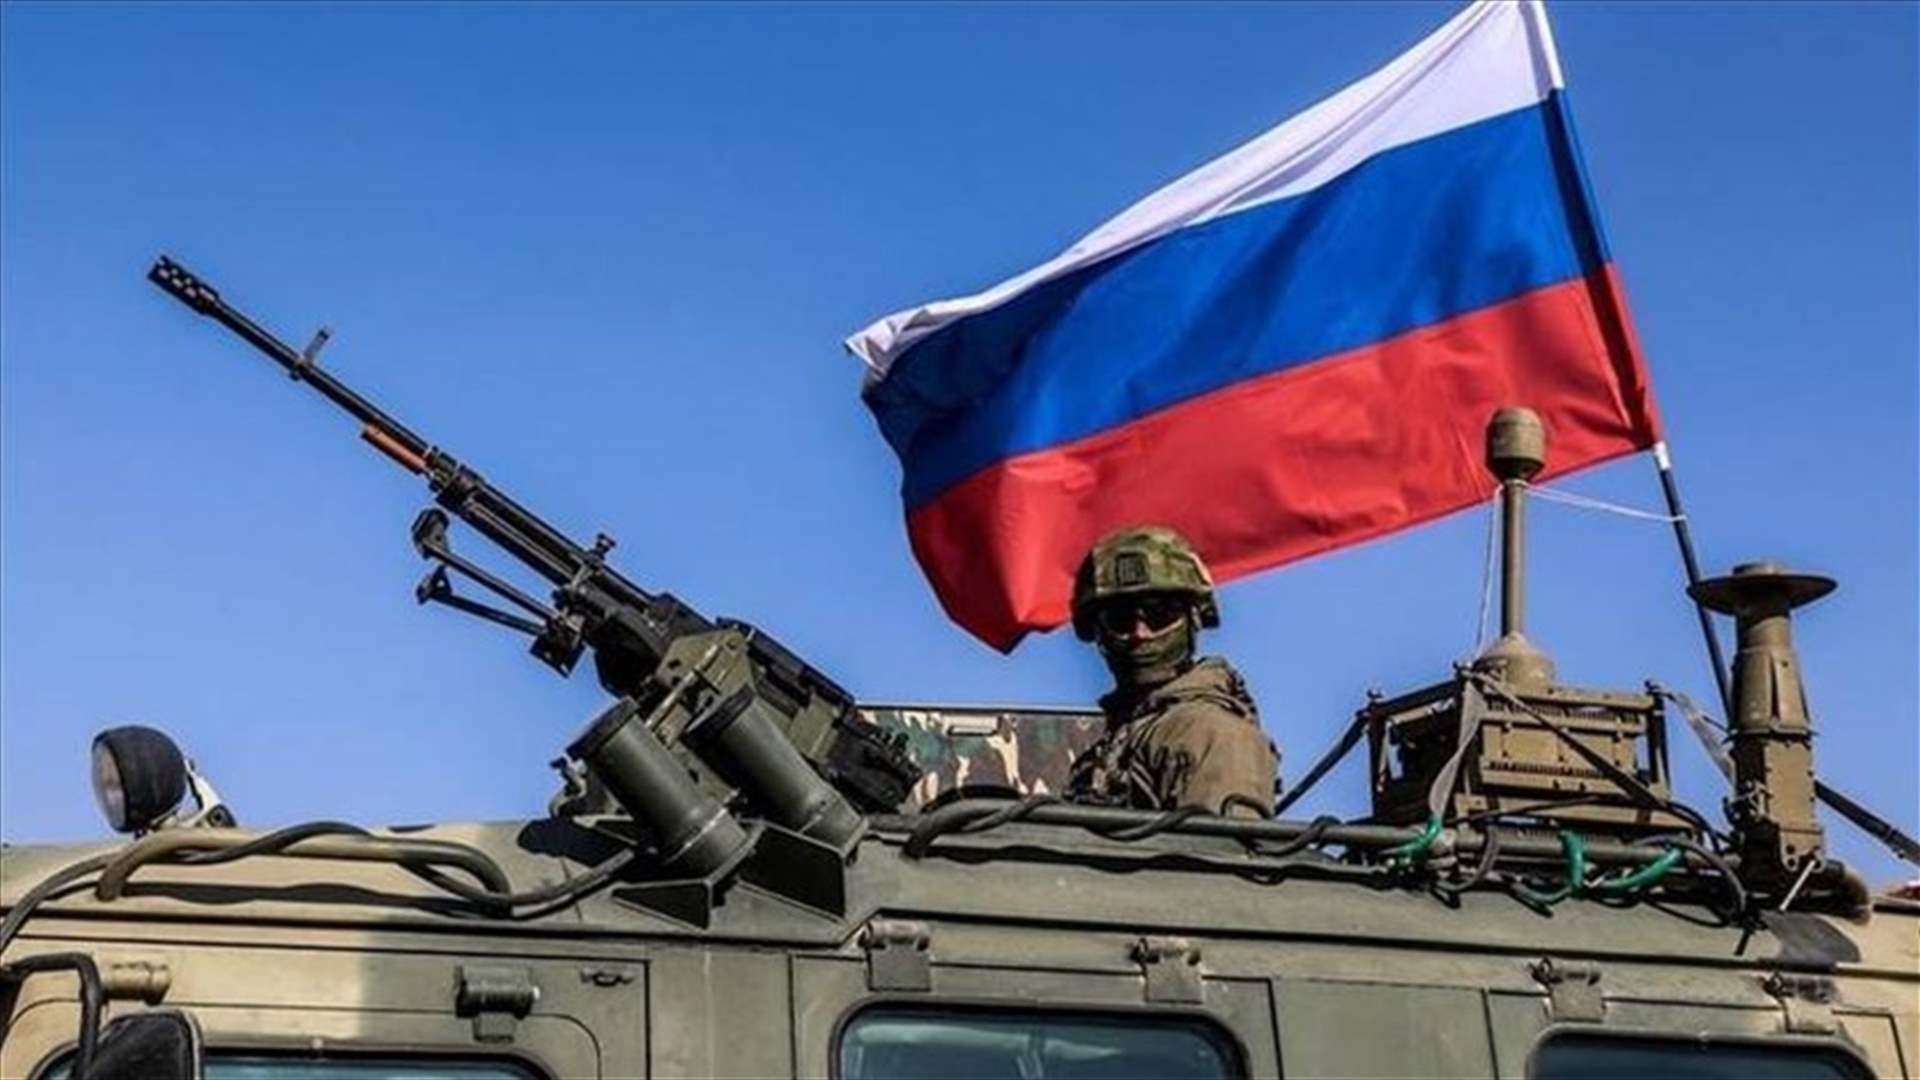 بعد هجوم موسكو... روسيا تسجّل ازديادا في عدد المتطوّعين في الجيش